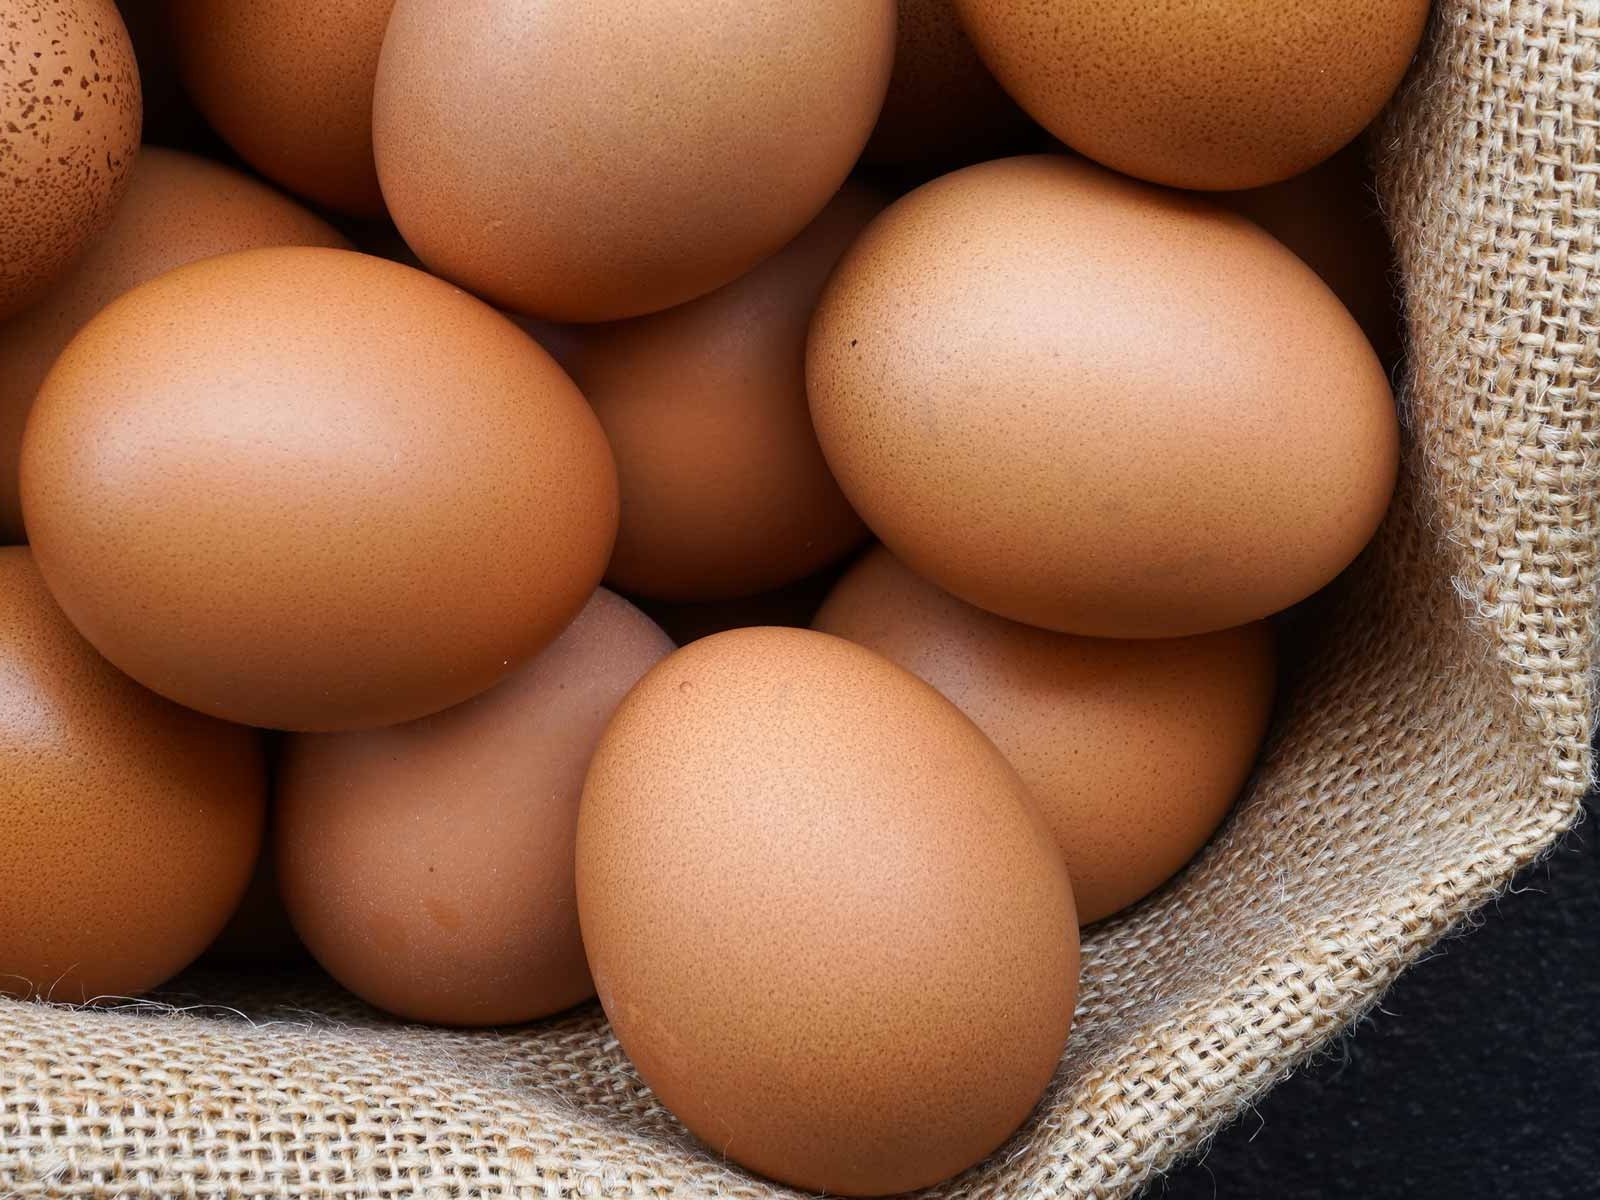 Eggs: Best Tips &amp; Tricks